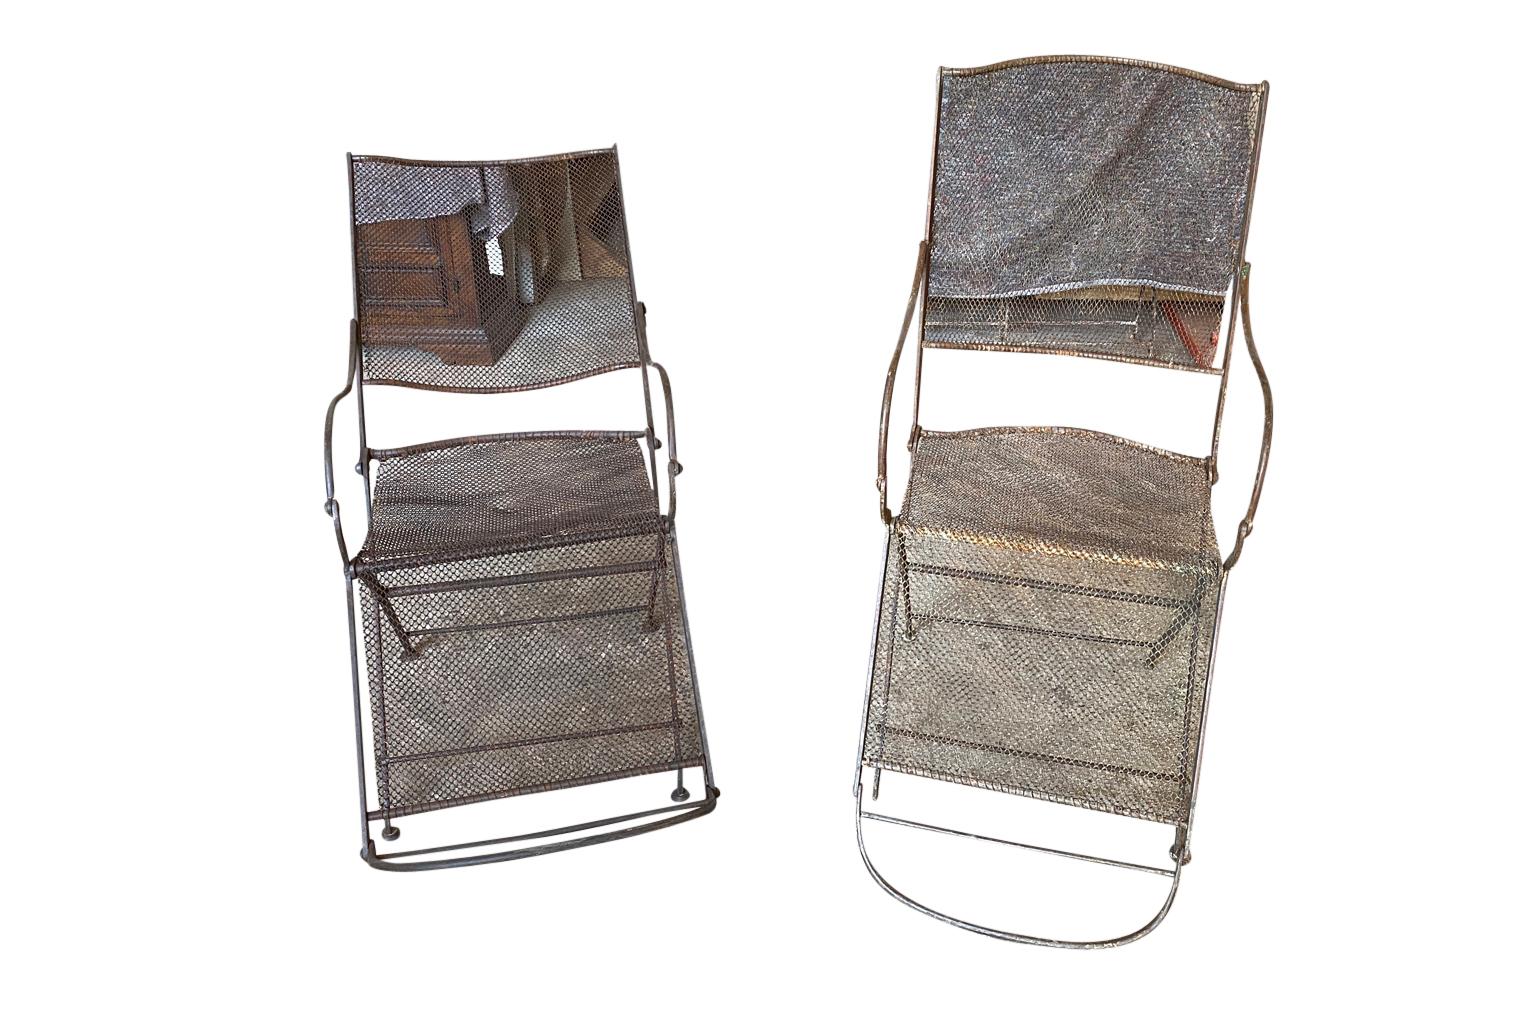 Ein sensationelles Paar englischer Gartensessel des 19. Jahrhunderts. Solide Konstruktion aus Eisen mit Rückenlehnen und Sitzen aus Eisengeflecht. Die Stühle lassen sich bequem zurücklehnen. Hervorragend geeignet für jeden Garten oder Innenraum.